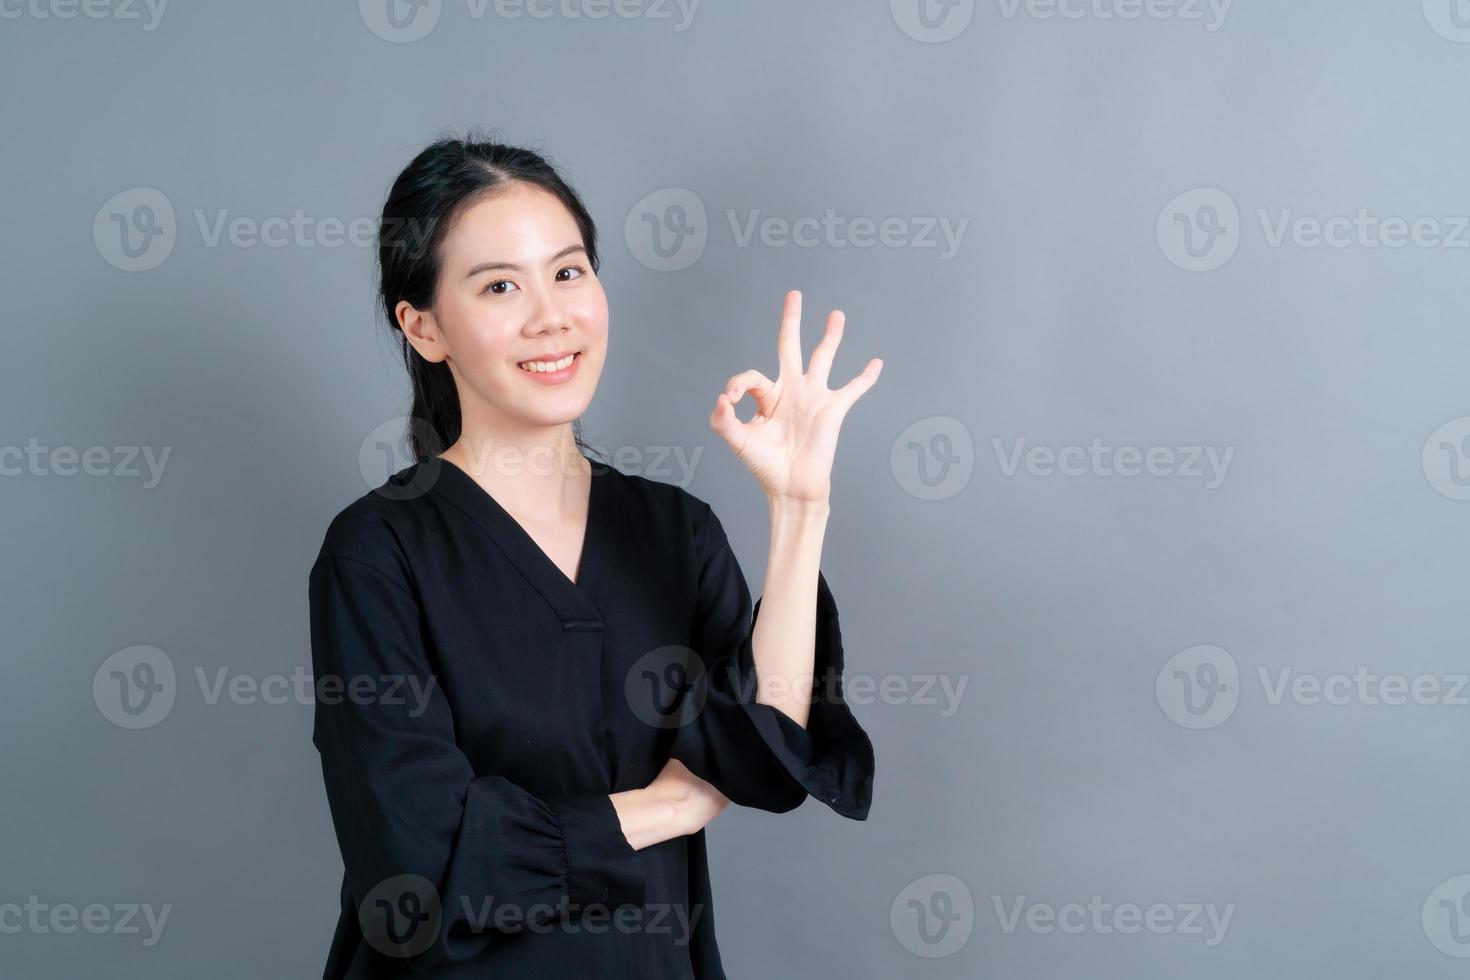 jovem mulher asiática sorrindo e mostrando sinal de ok foto